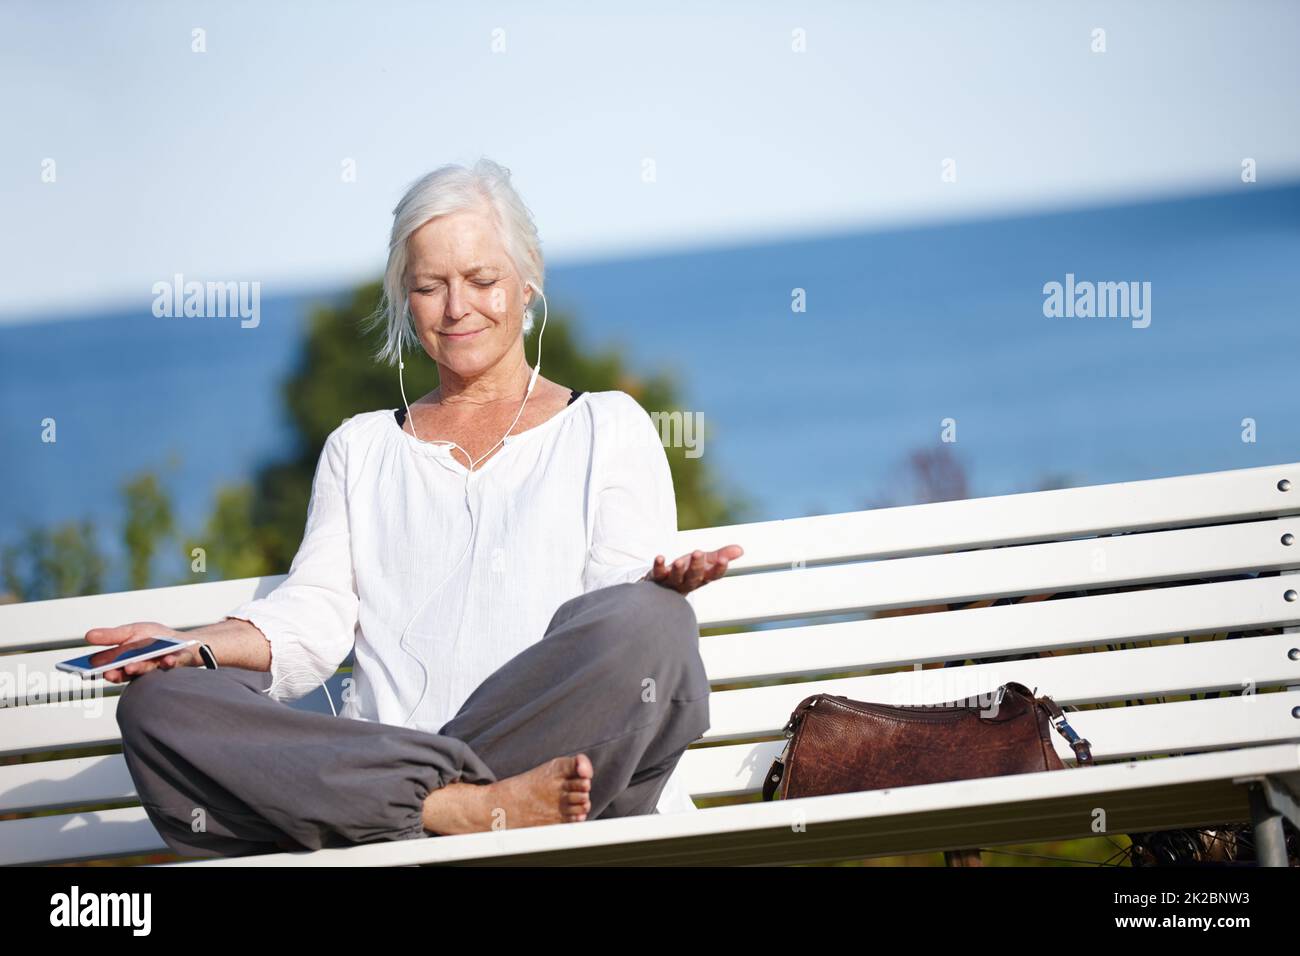 Rilassatevi con musica tranquilla. Scatto di una donna matura che ascolta la musica mentre fai un esercizio di relax all'aperto. Foto Stock